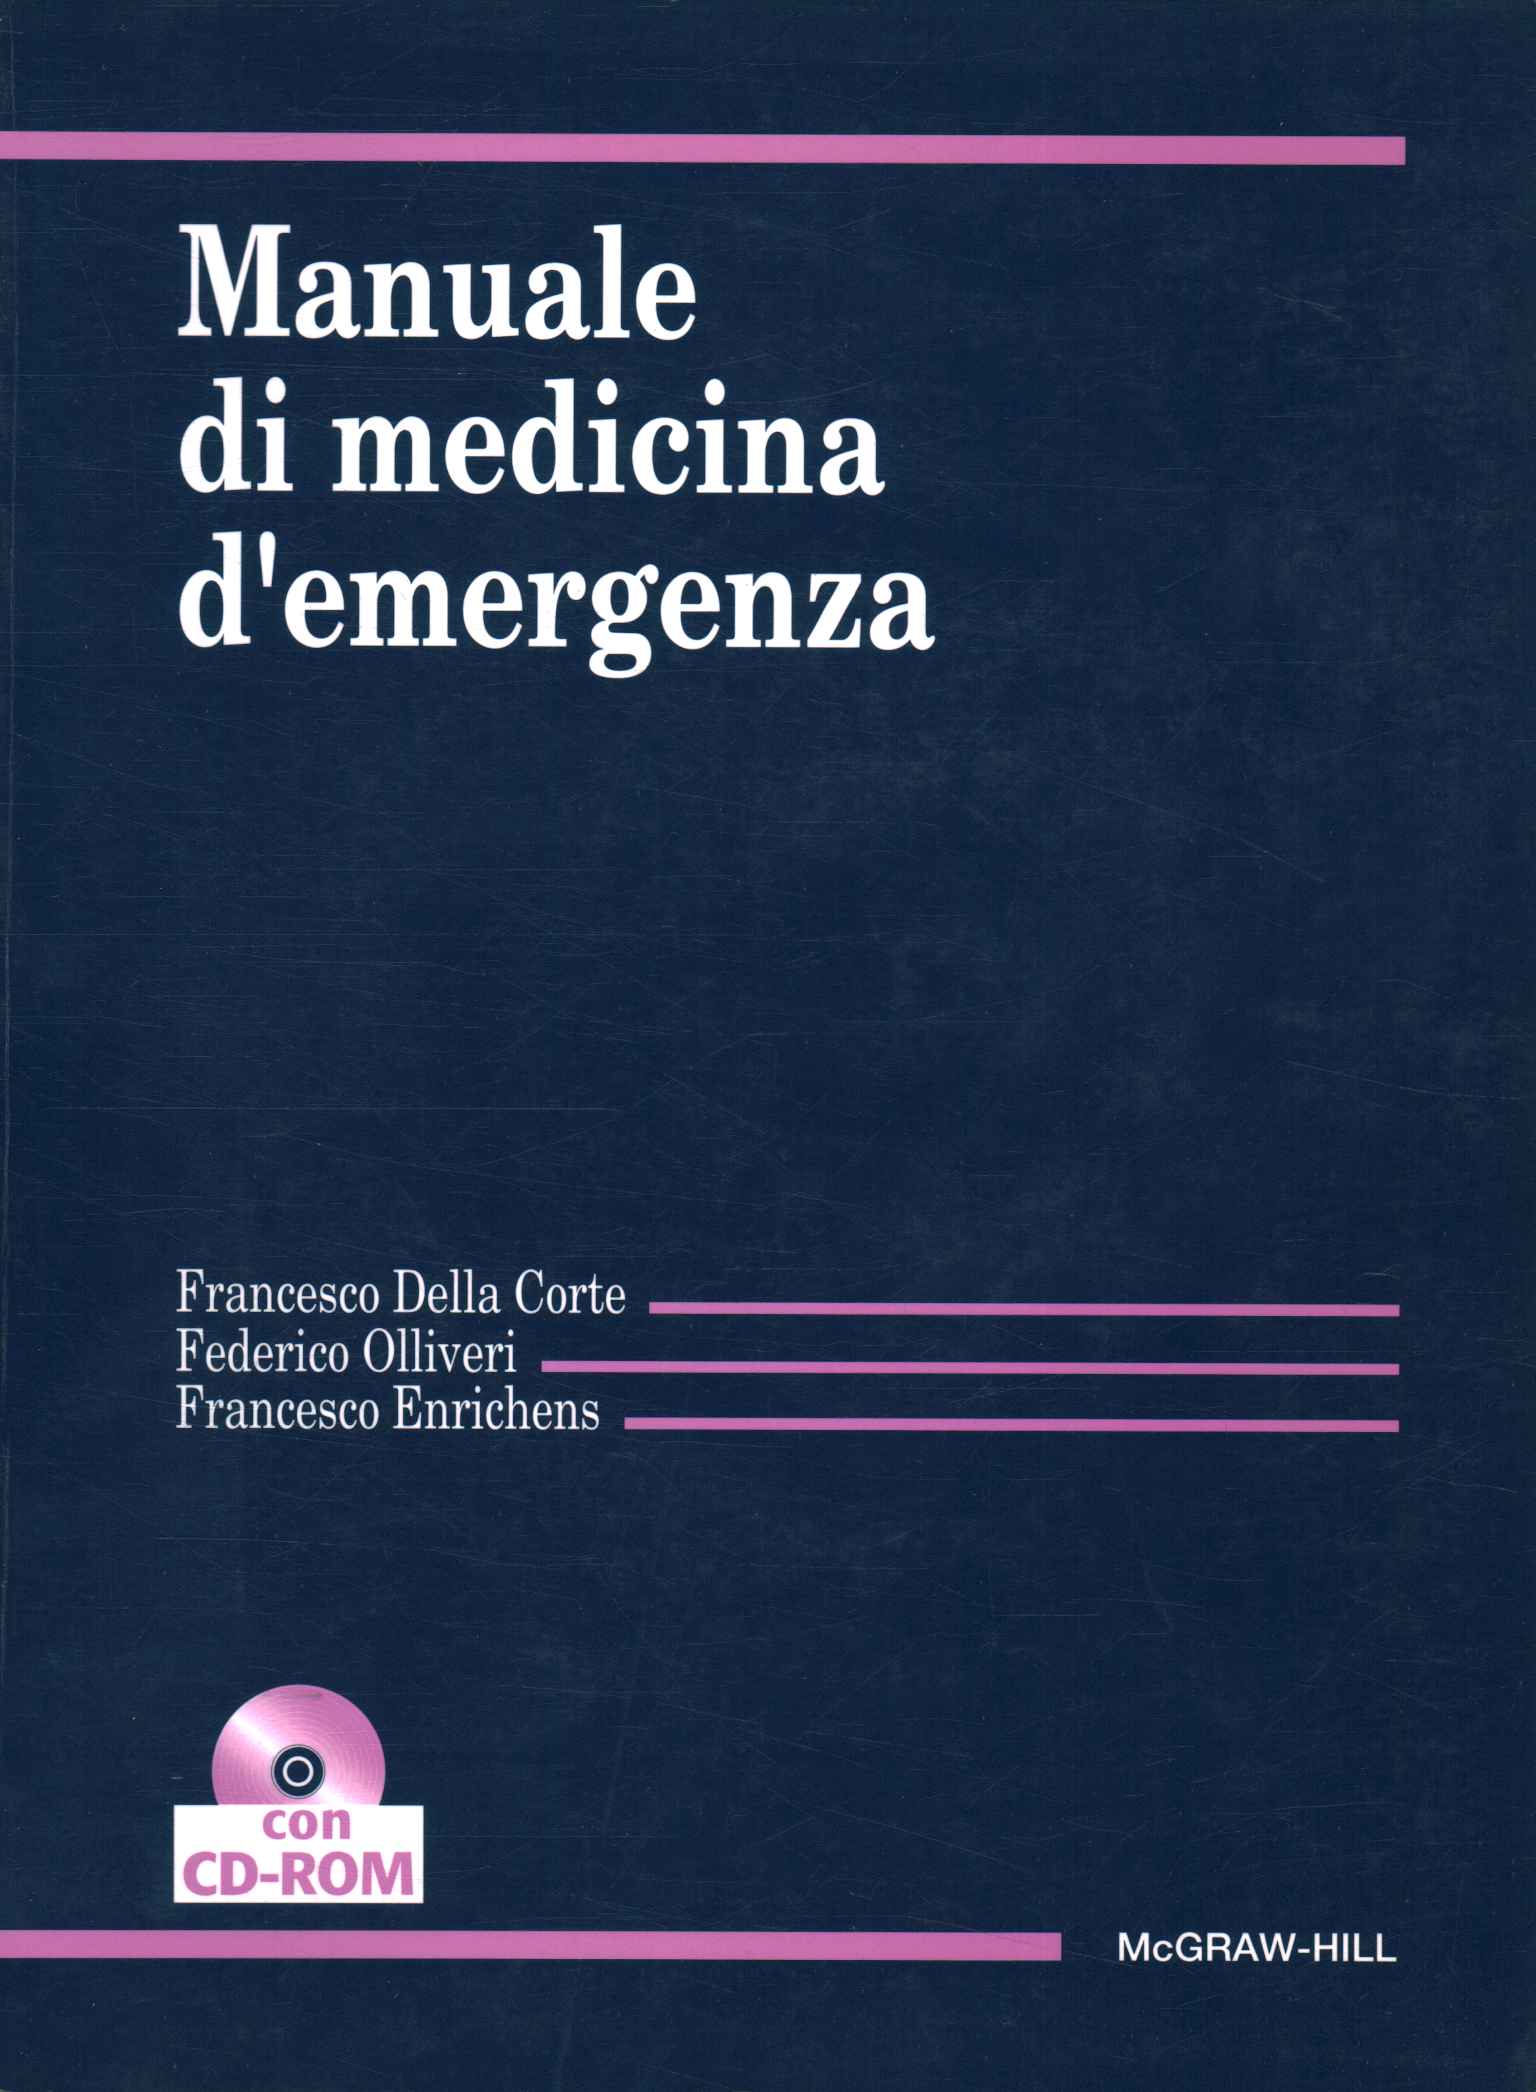 Handbuch zur Notfallmedizin%2,Handbuch zur Notfallmedizin%2,Handbuch zur Notfallmedizin%2